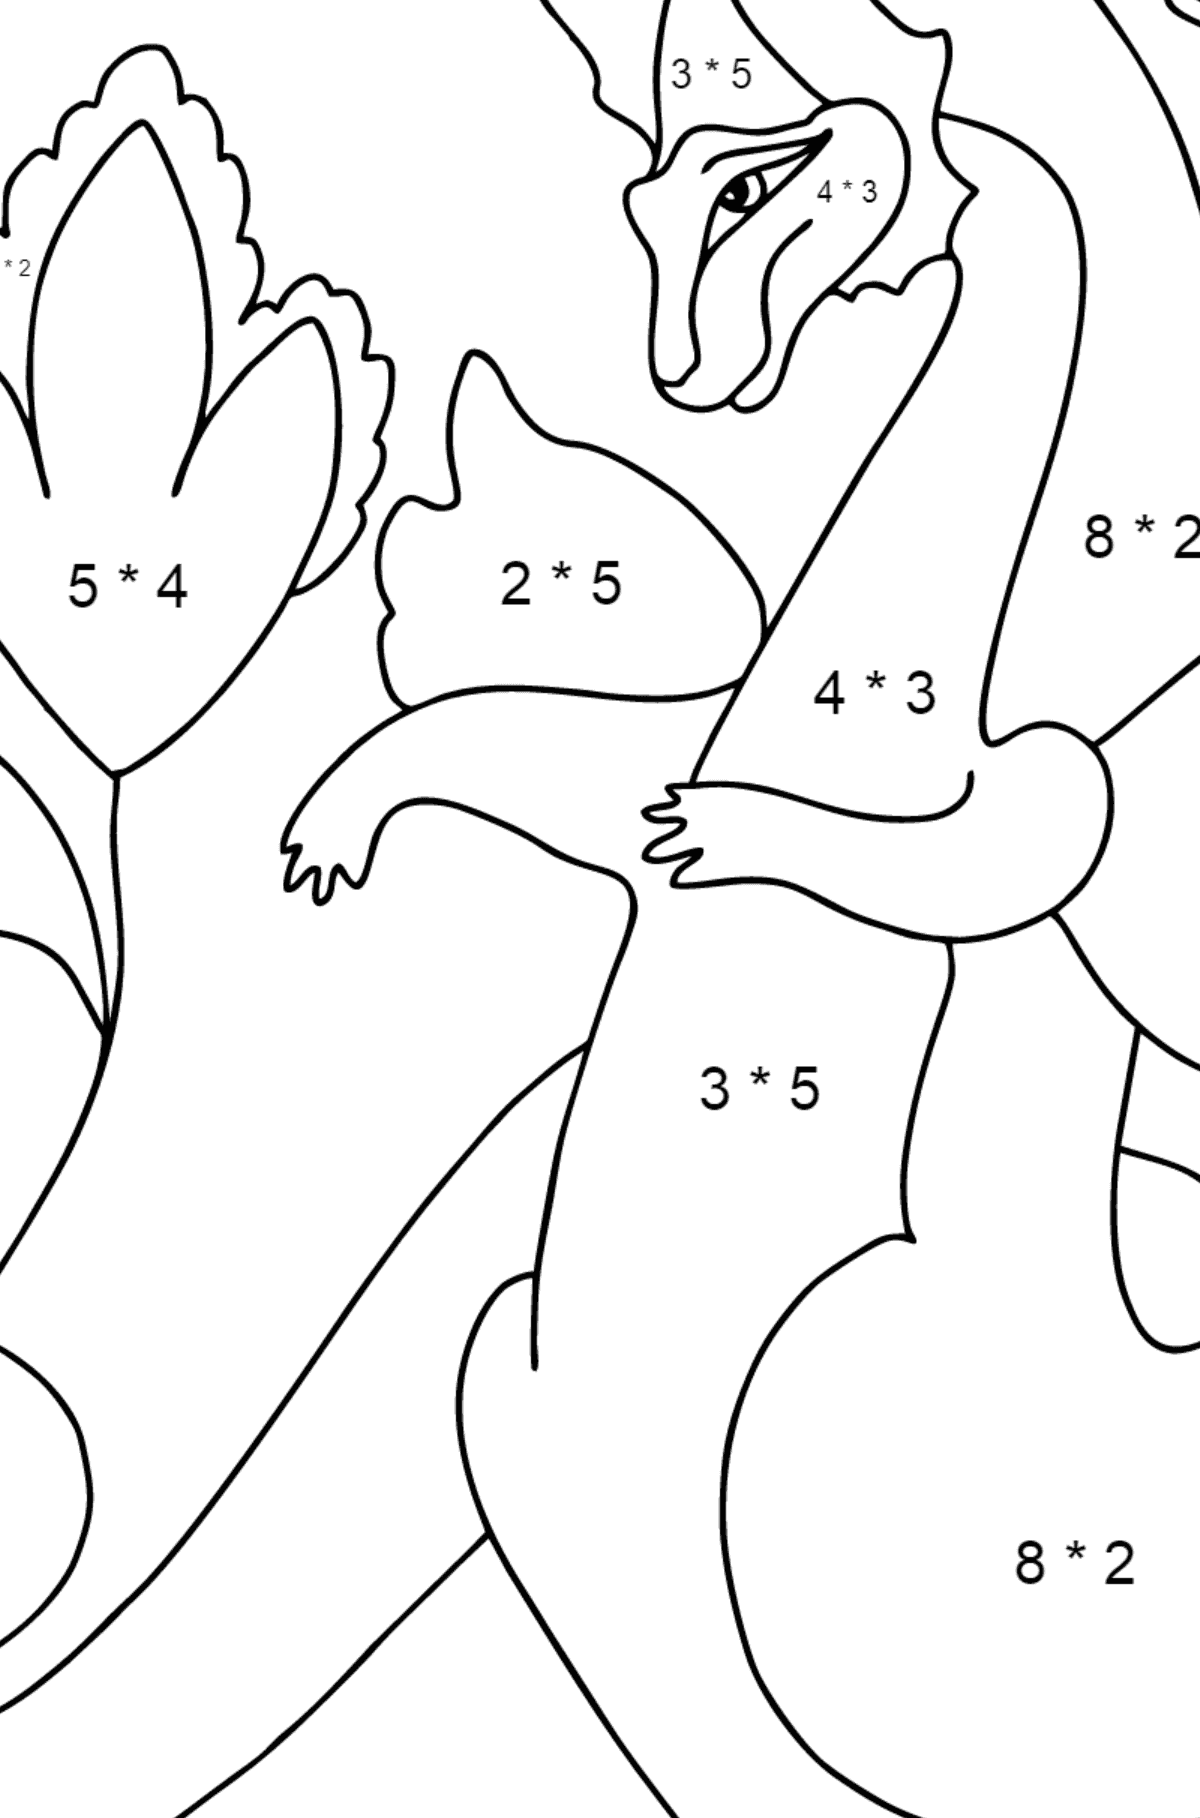 Imagem para colorir dragão e flor - Colorindo com Matemática - Multiplicação para Crianças